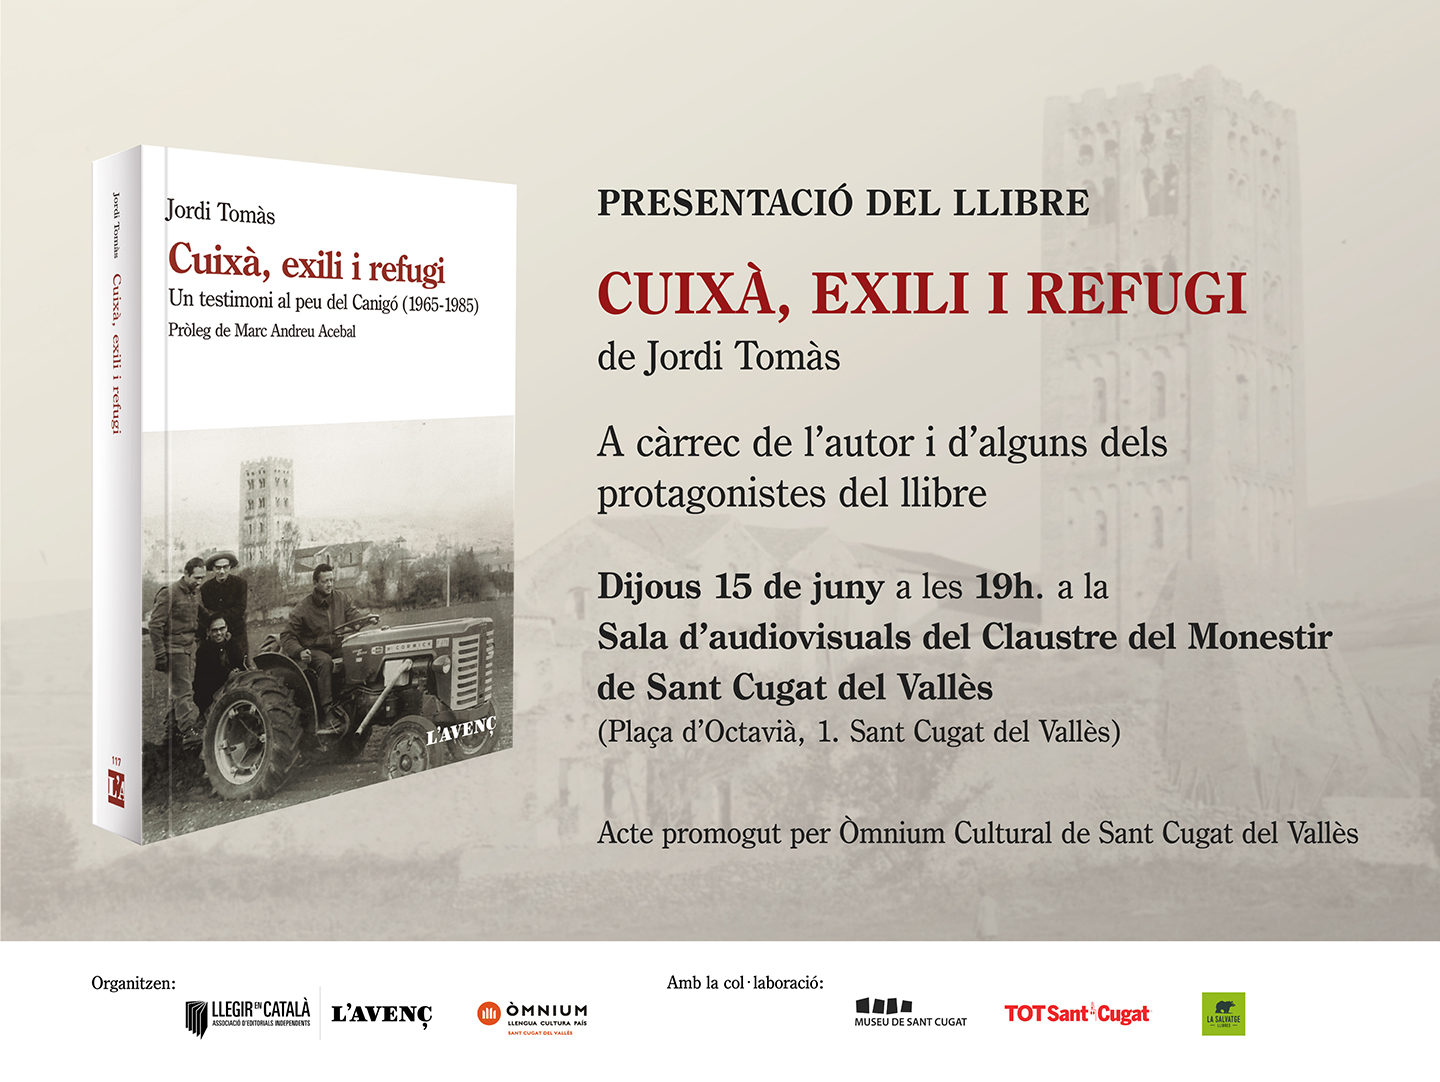 Presentació del llibre “Cuixà, exili i refugi ” a Sant Cugat del Vallès